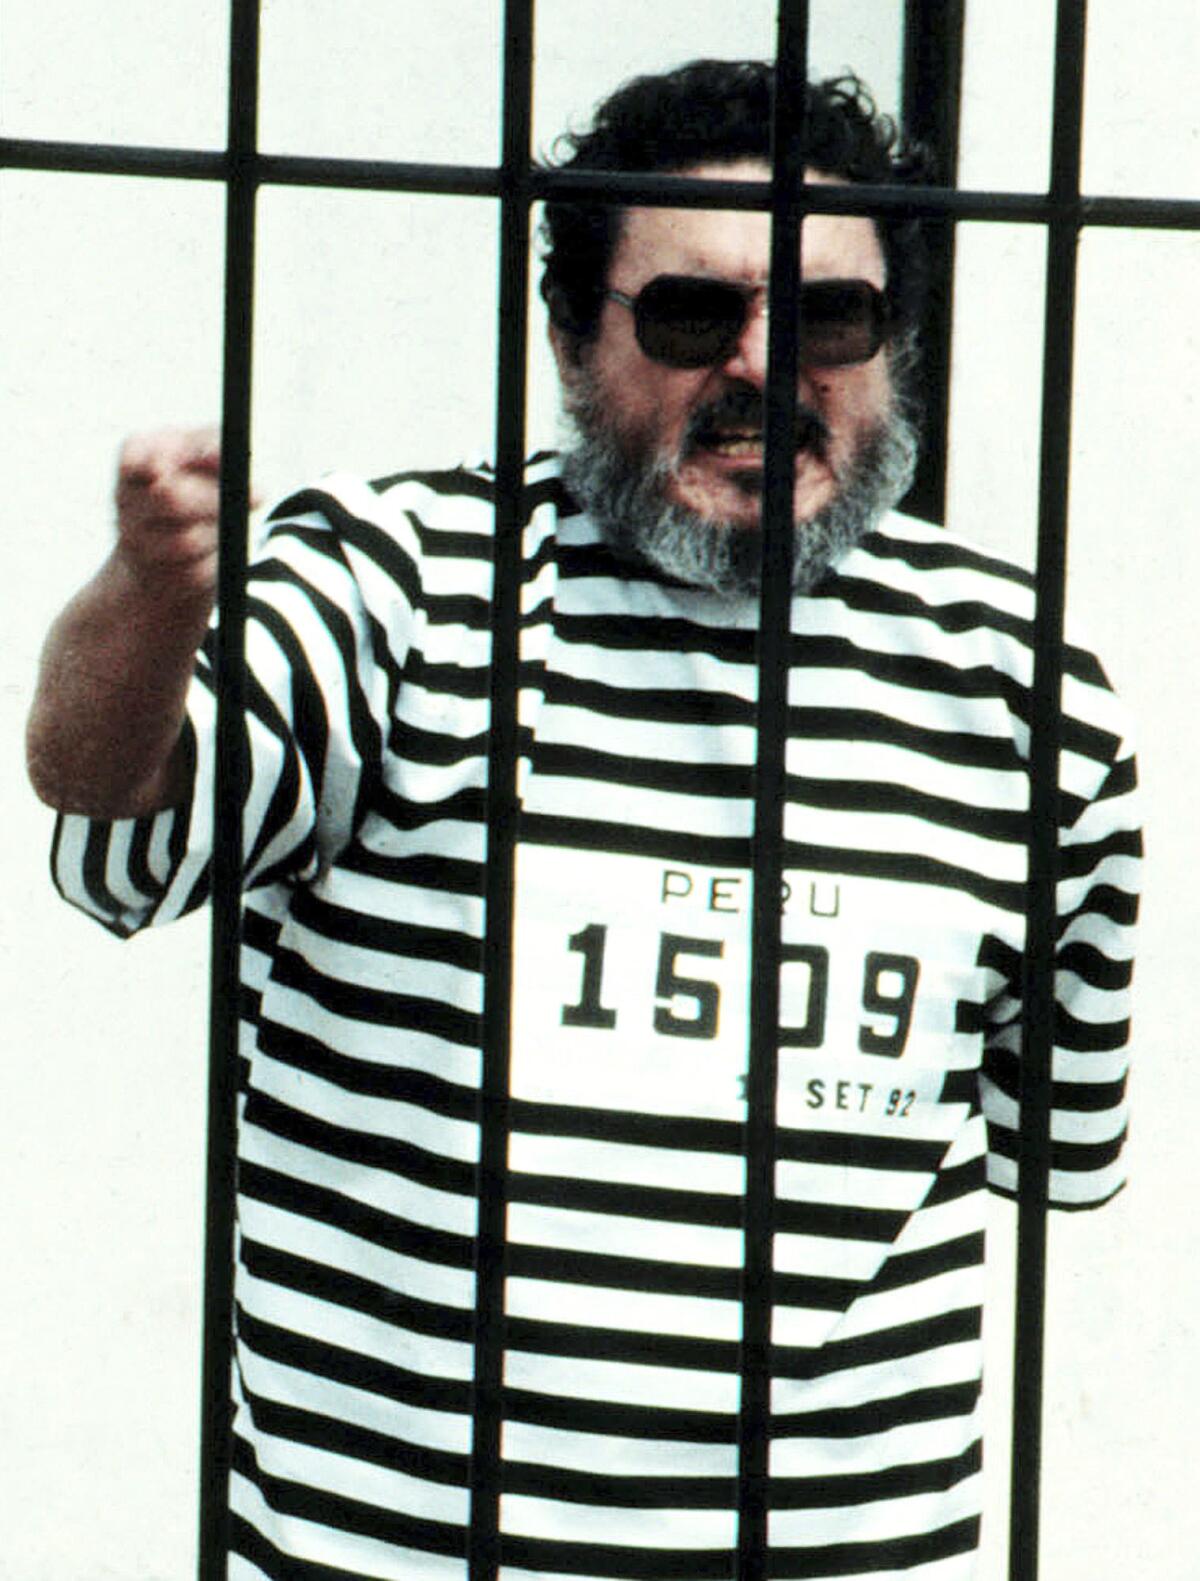  Abimael Guzmán, el fundador y líder de Sendero Luminoso, grita desde una celda después de ser capturado en Lima, Perú. 